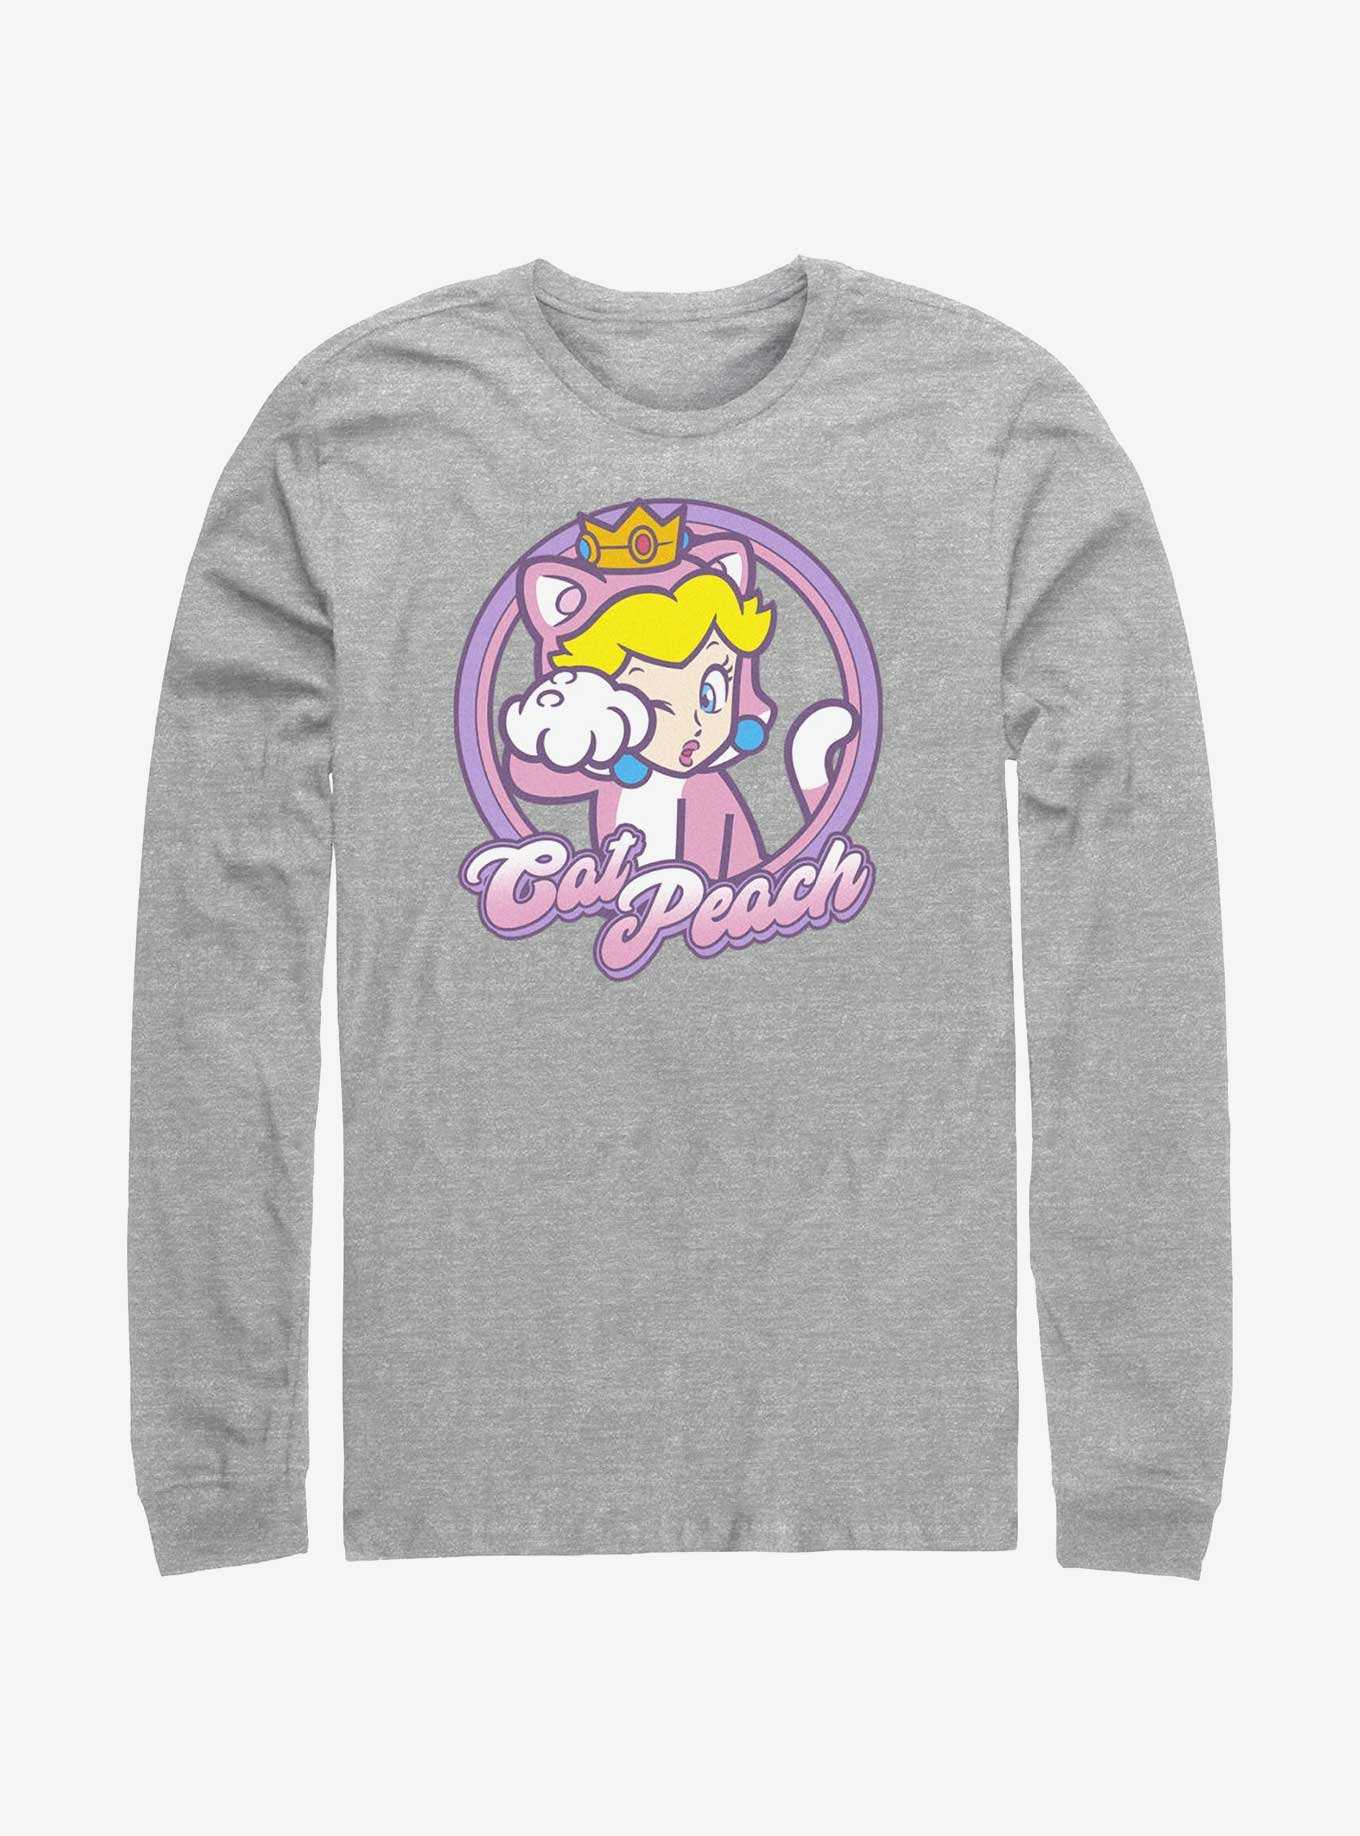 Mario Cat Princess Peach Long-Sleeve T-Shirt, , hi-res